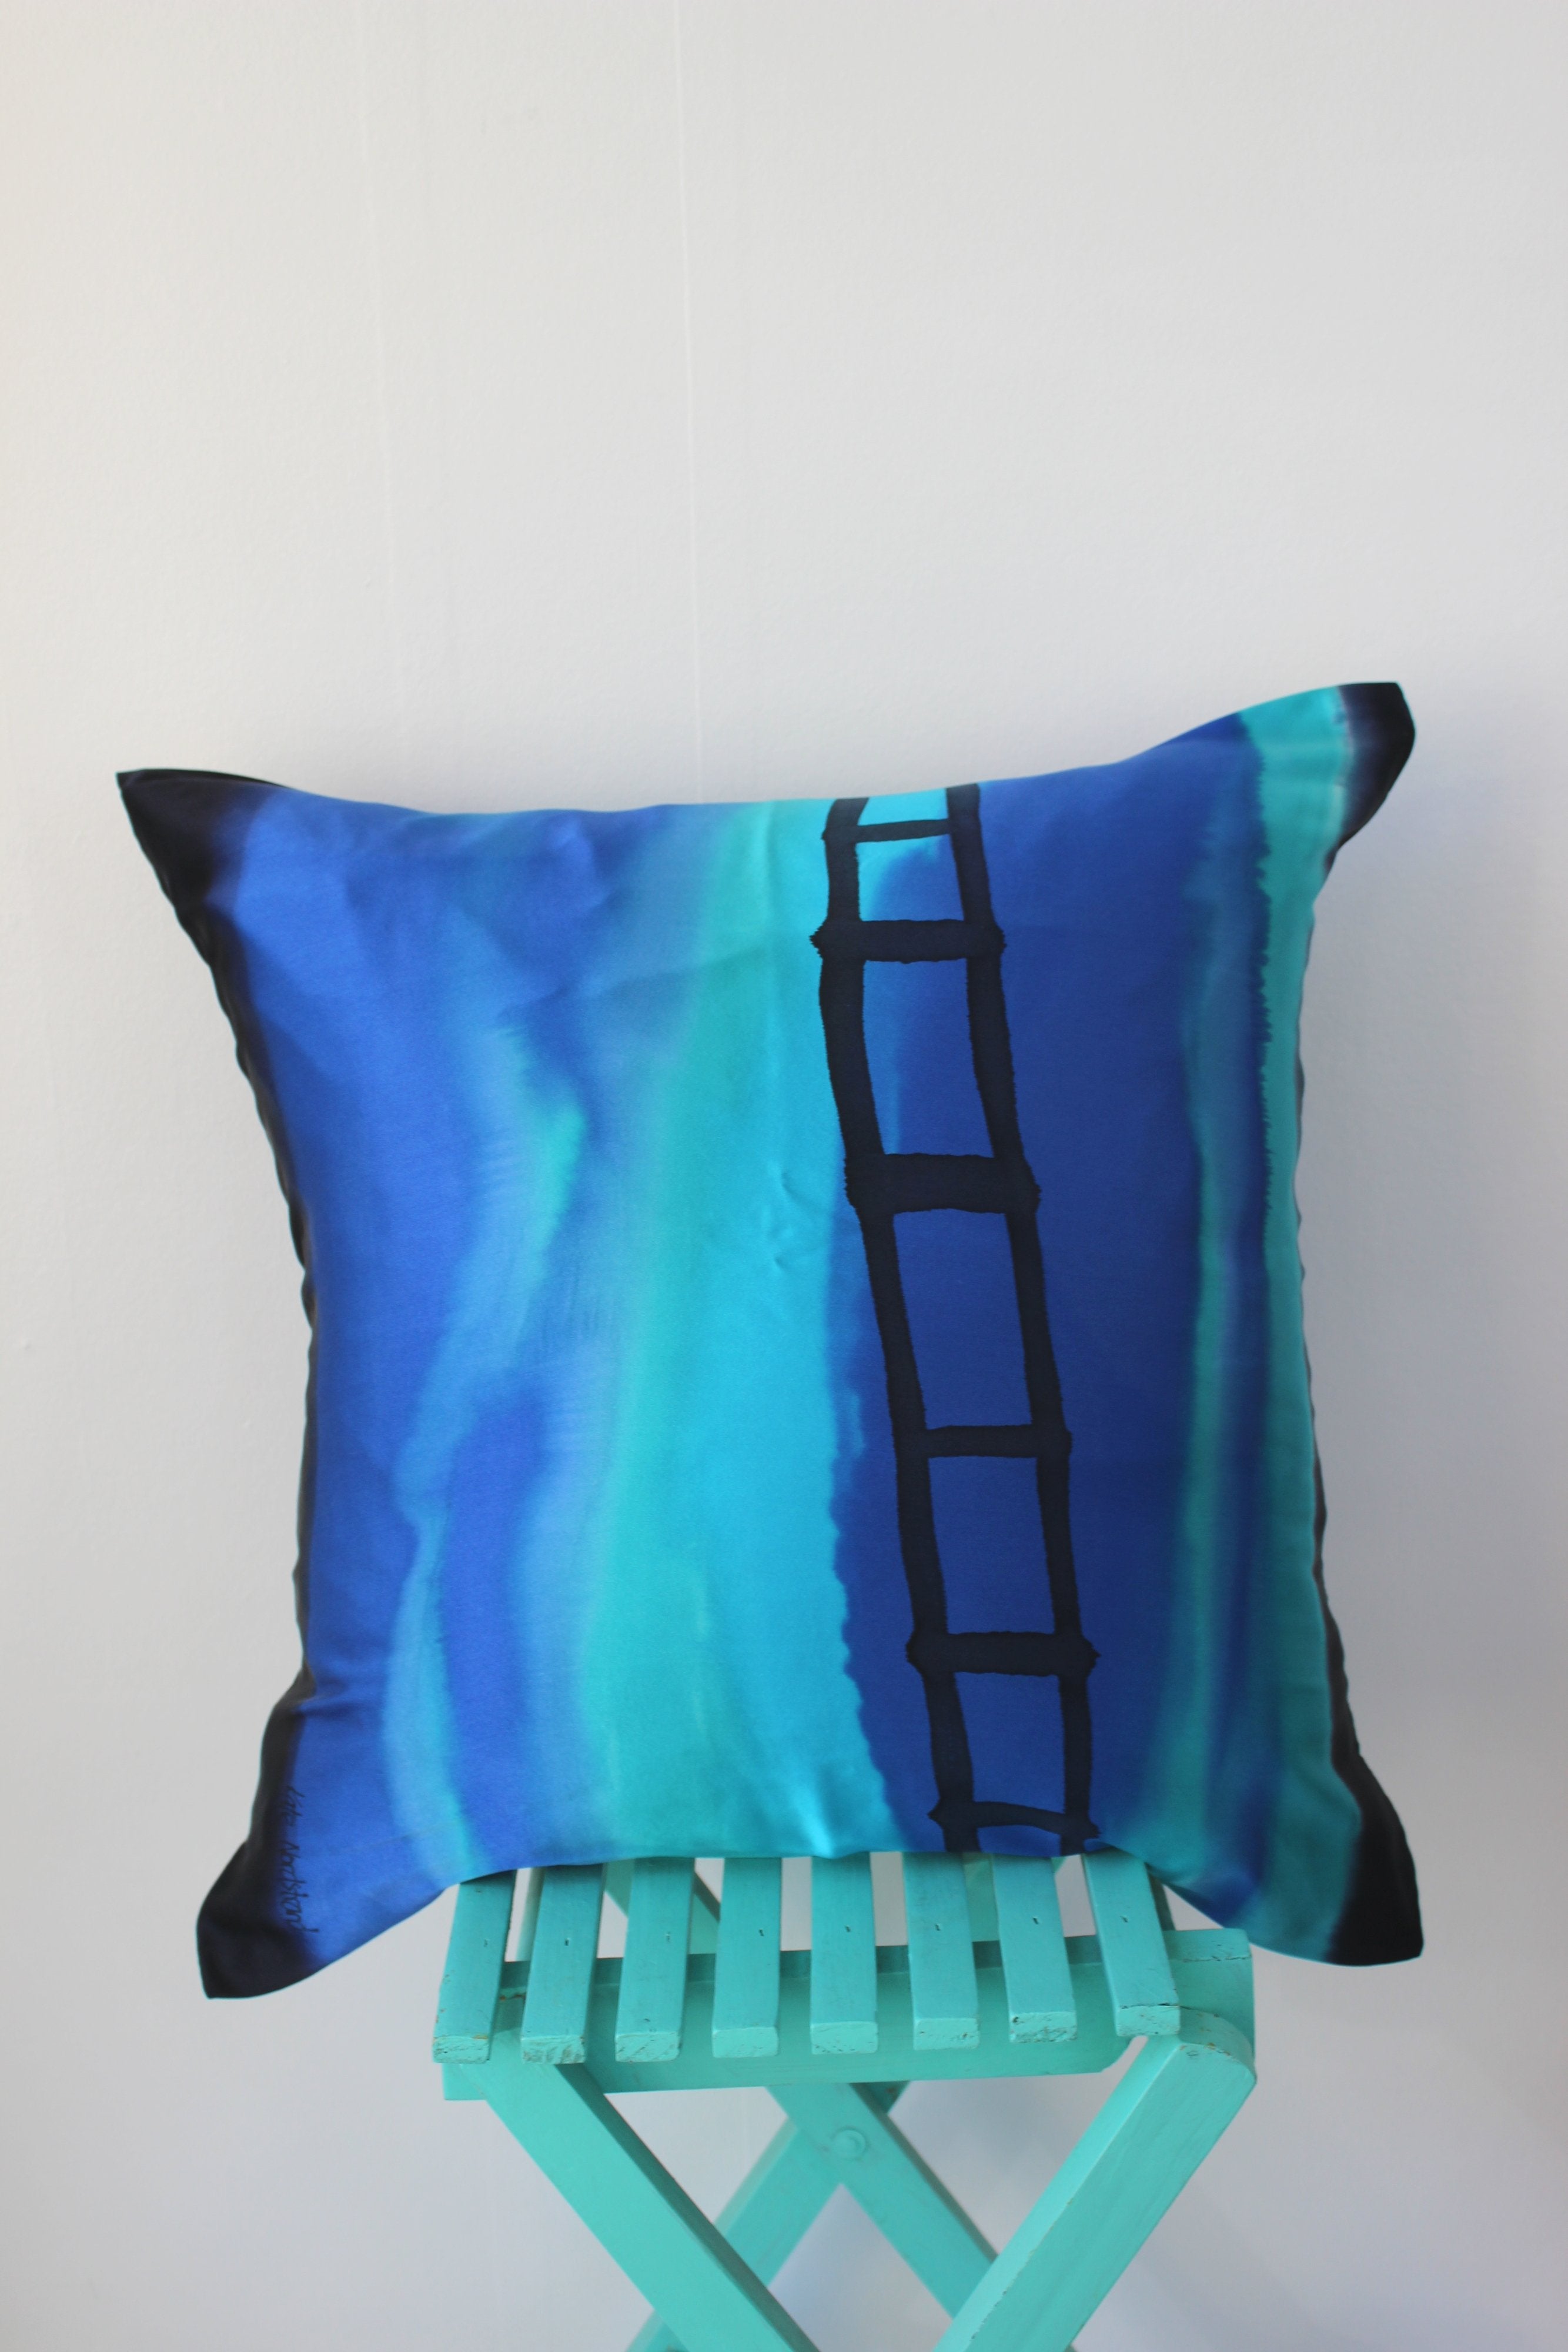 Hand painted silk cushion "Blue shades"